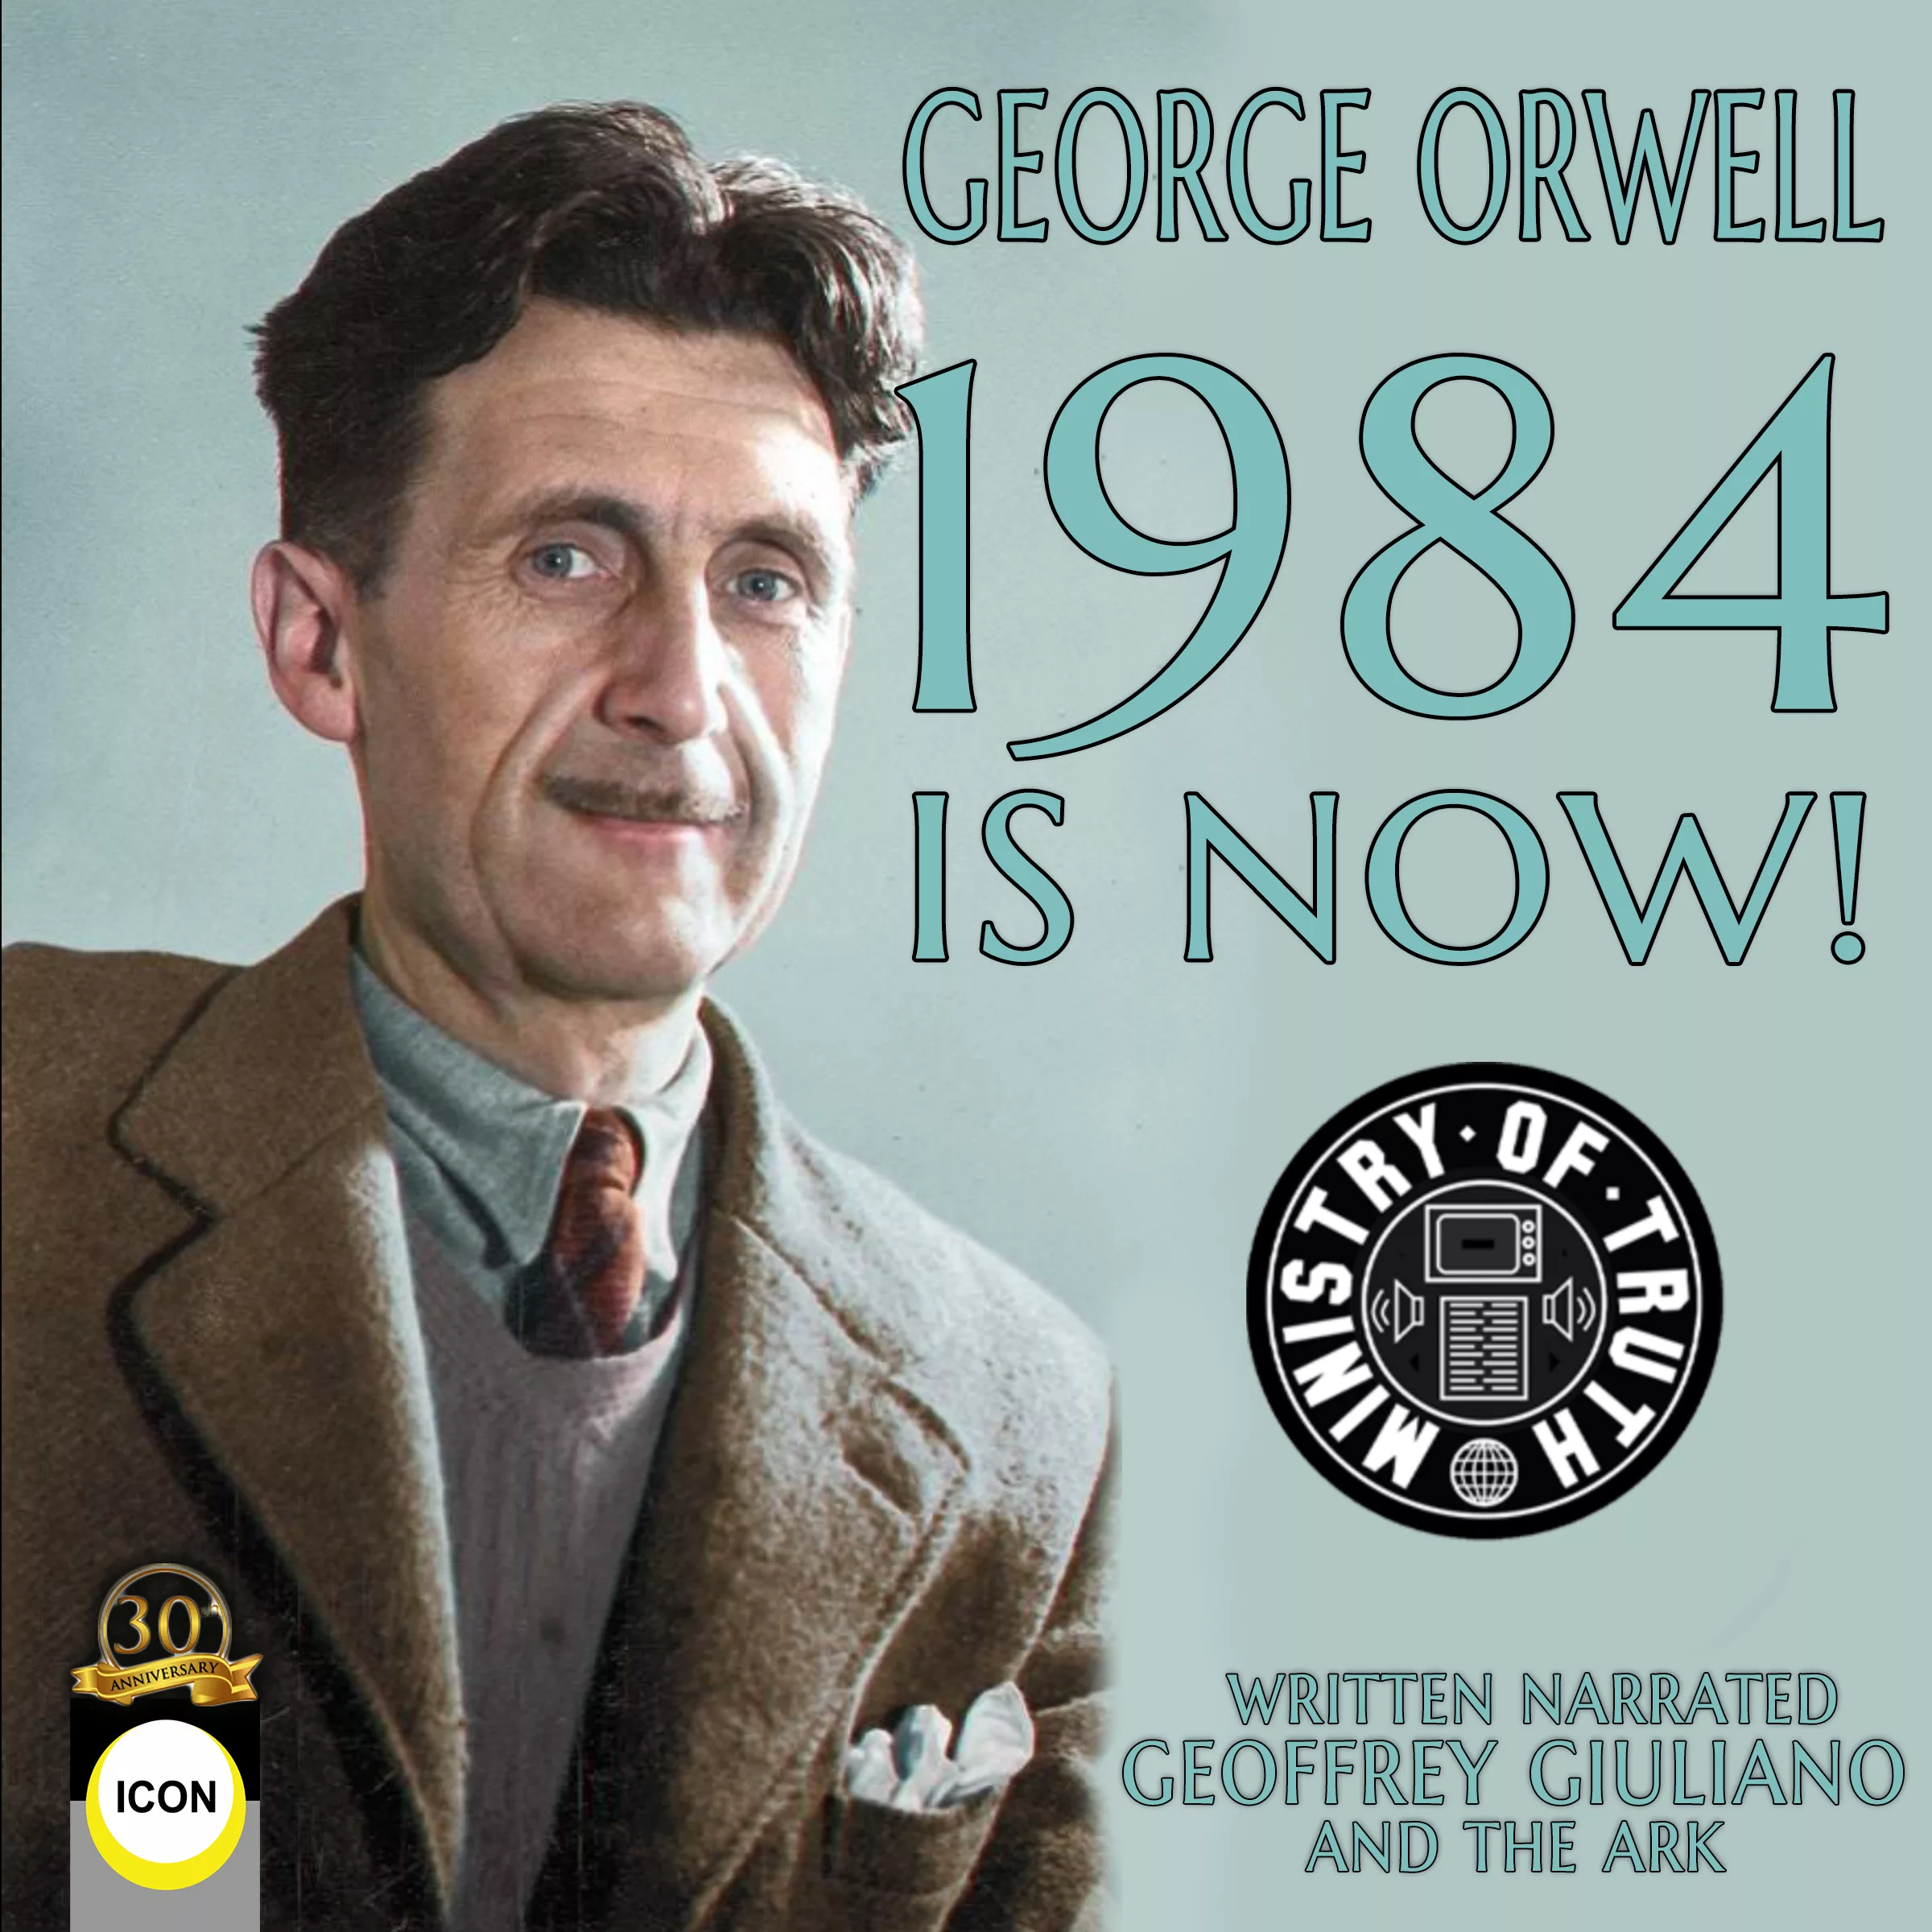 George Orwells 1984, the dramatised audiobook